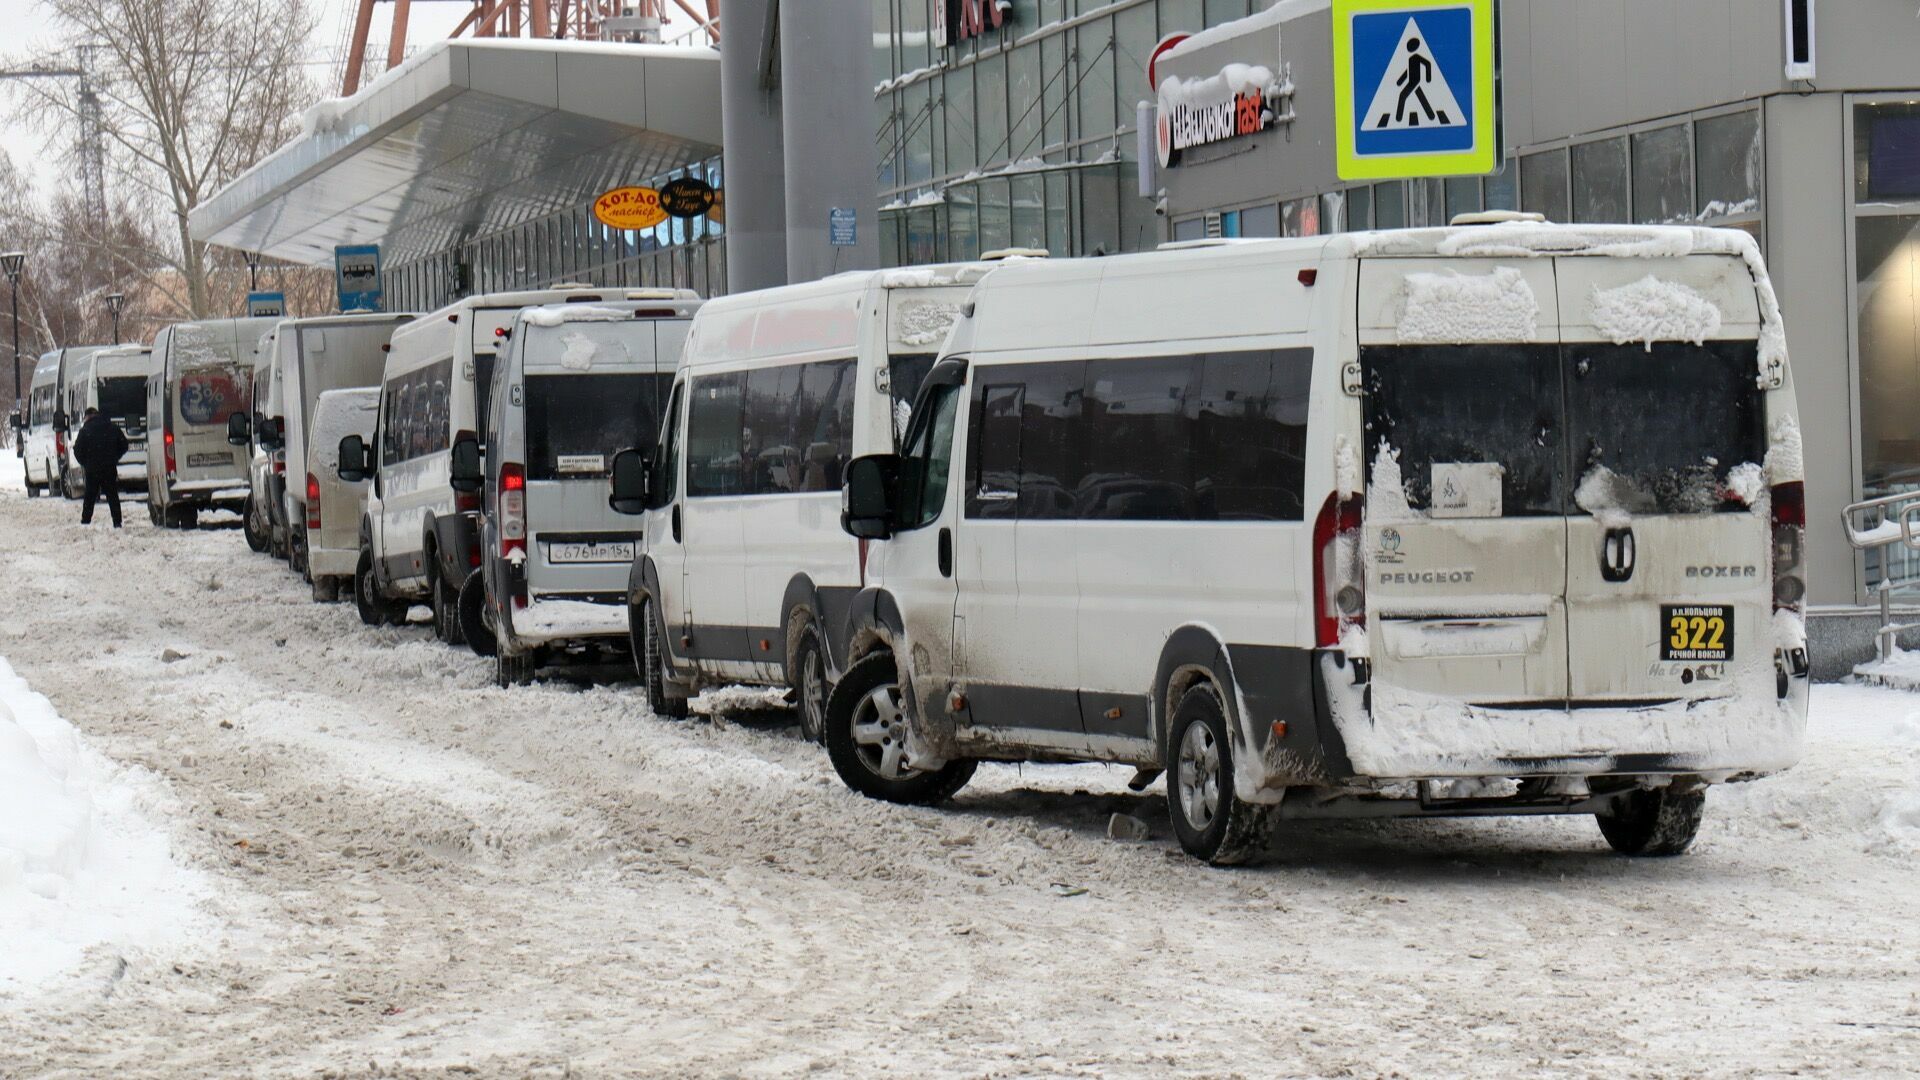 Пьяного водителя маршрутки, который вез 8 пассажиров, задержали в Челябинской области